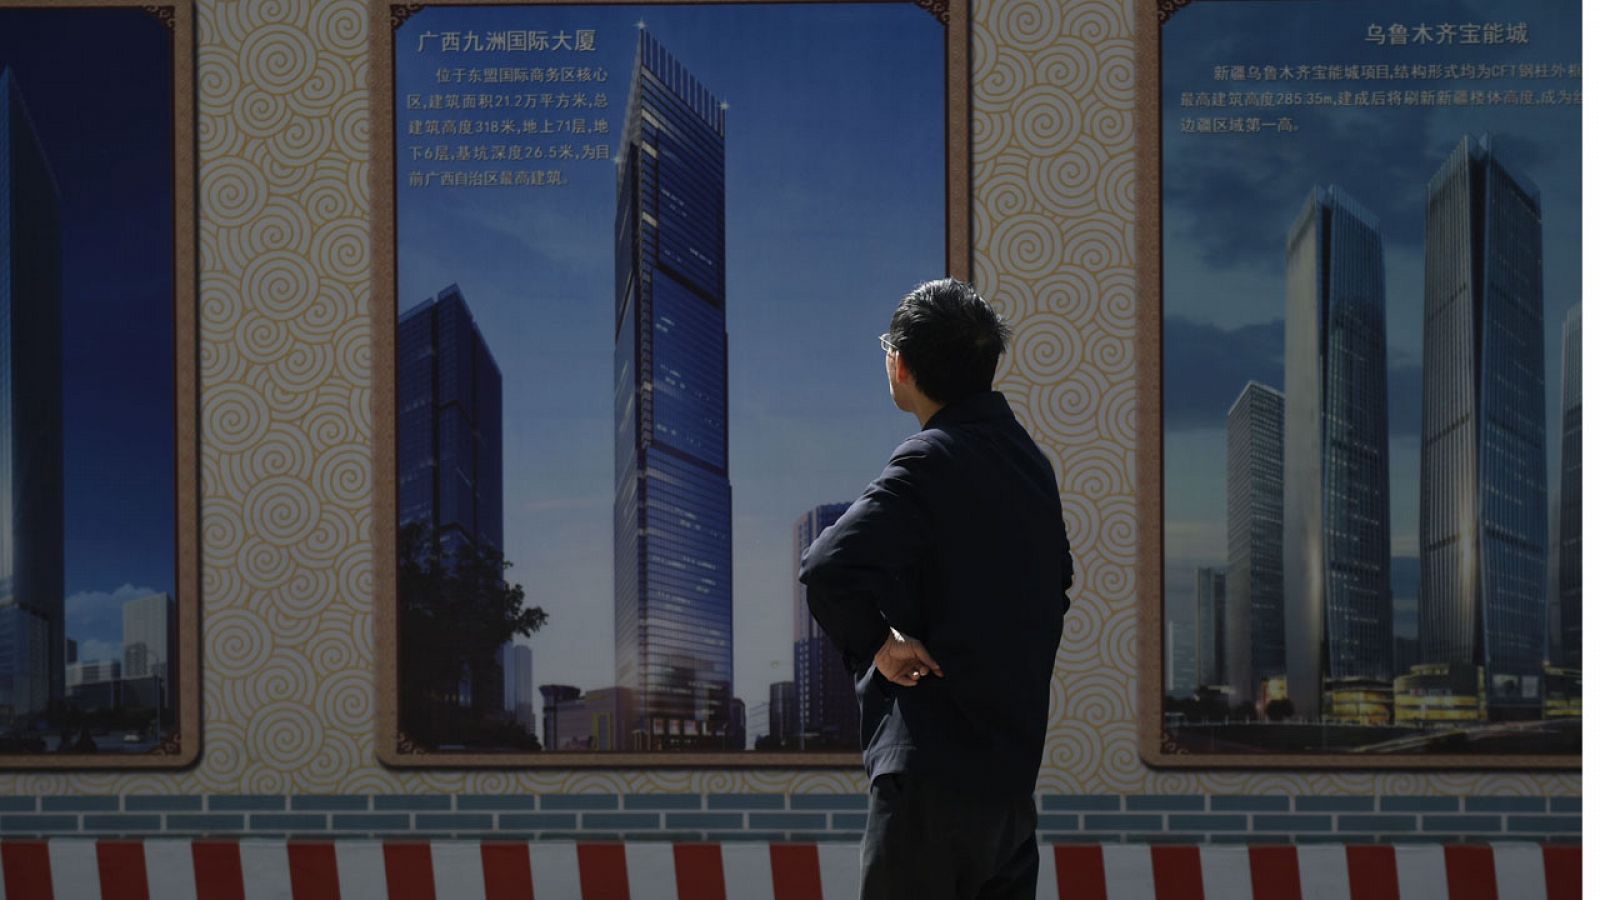 Un hombre contempla el poster de una construcción en Pekín.